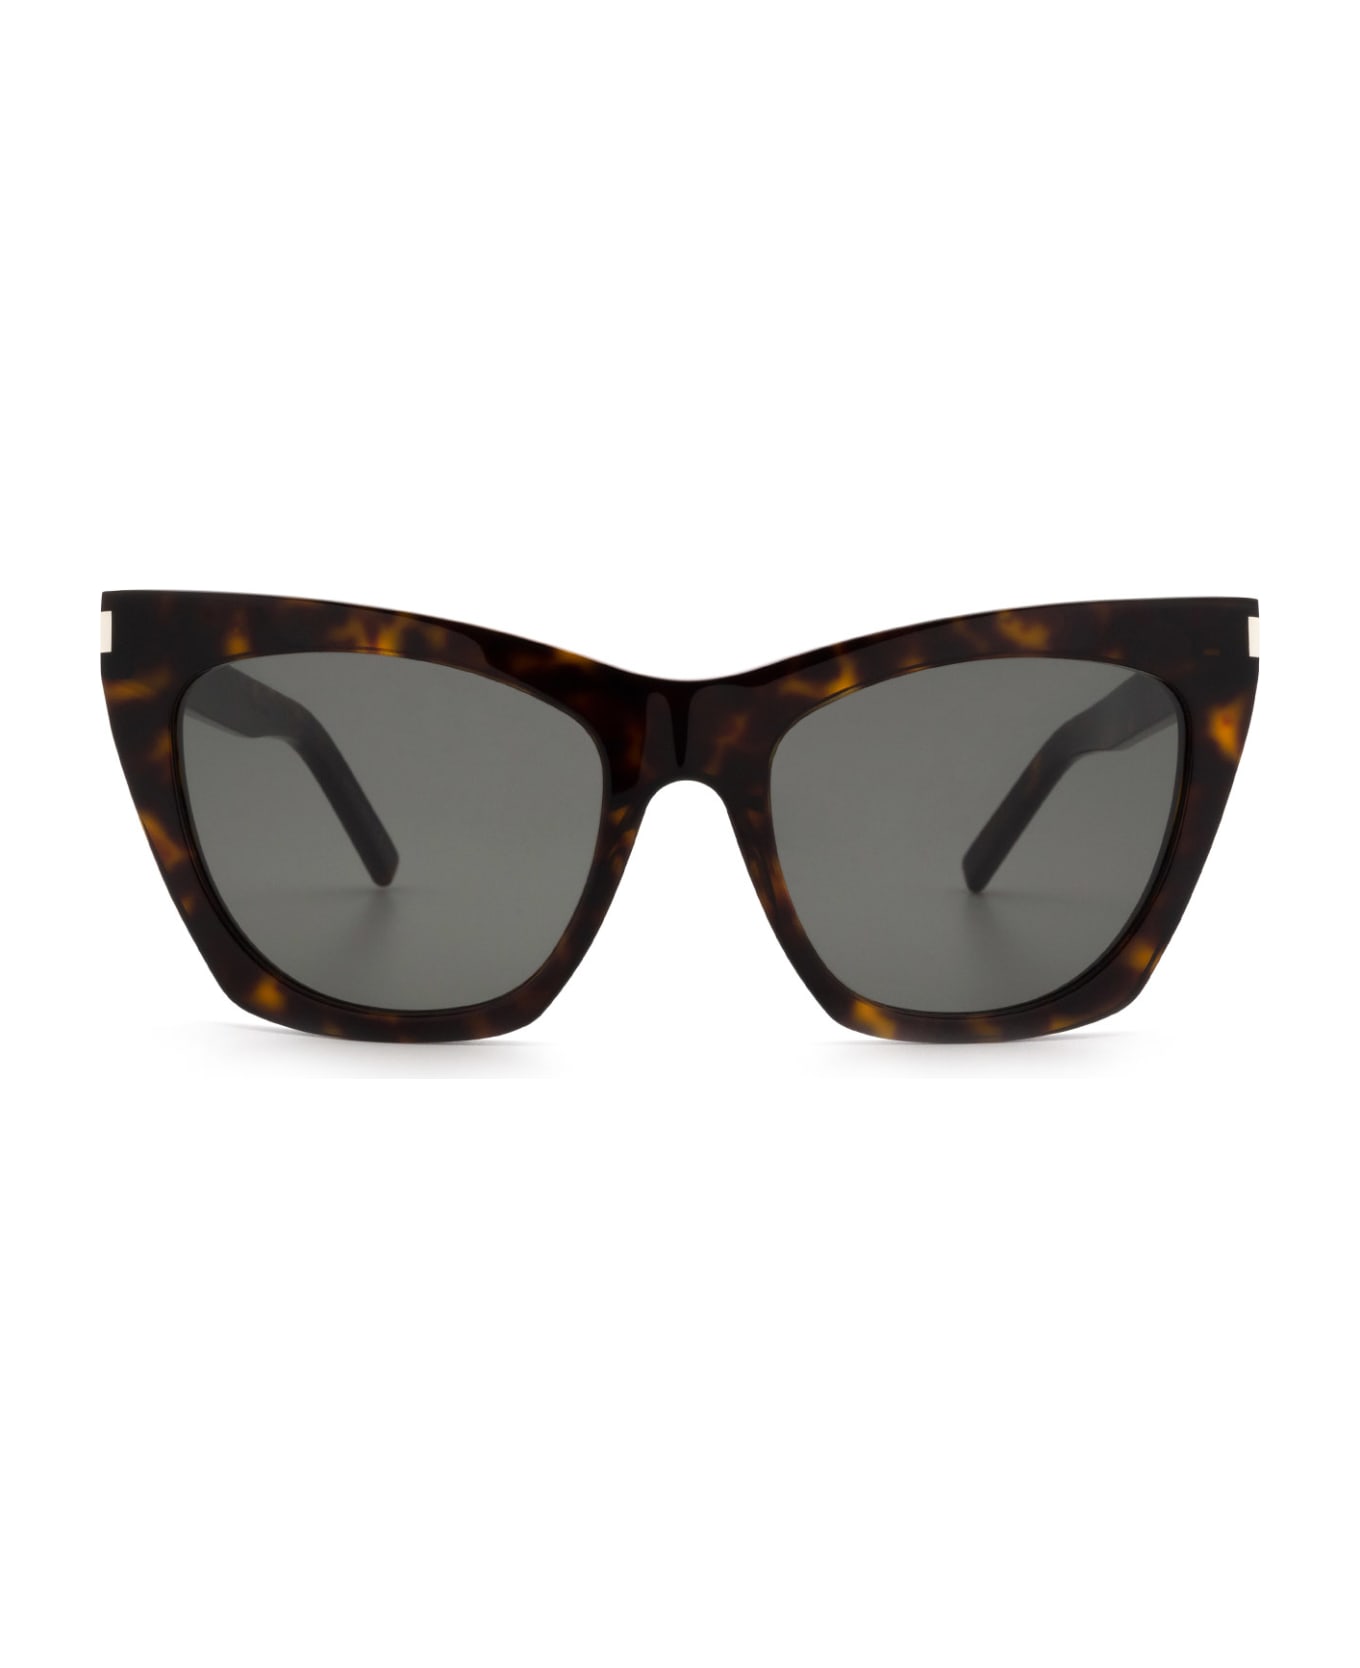 Saint Laurent Eyewear Sl 214 Havana Sunglasses - Havana